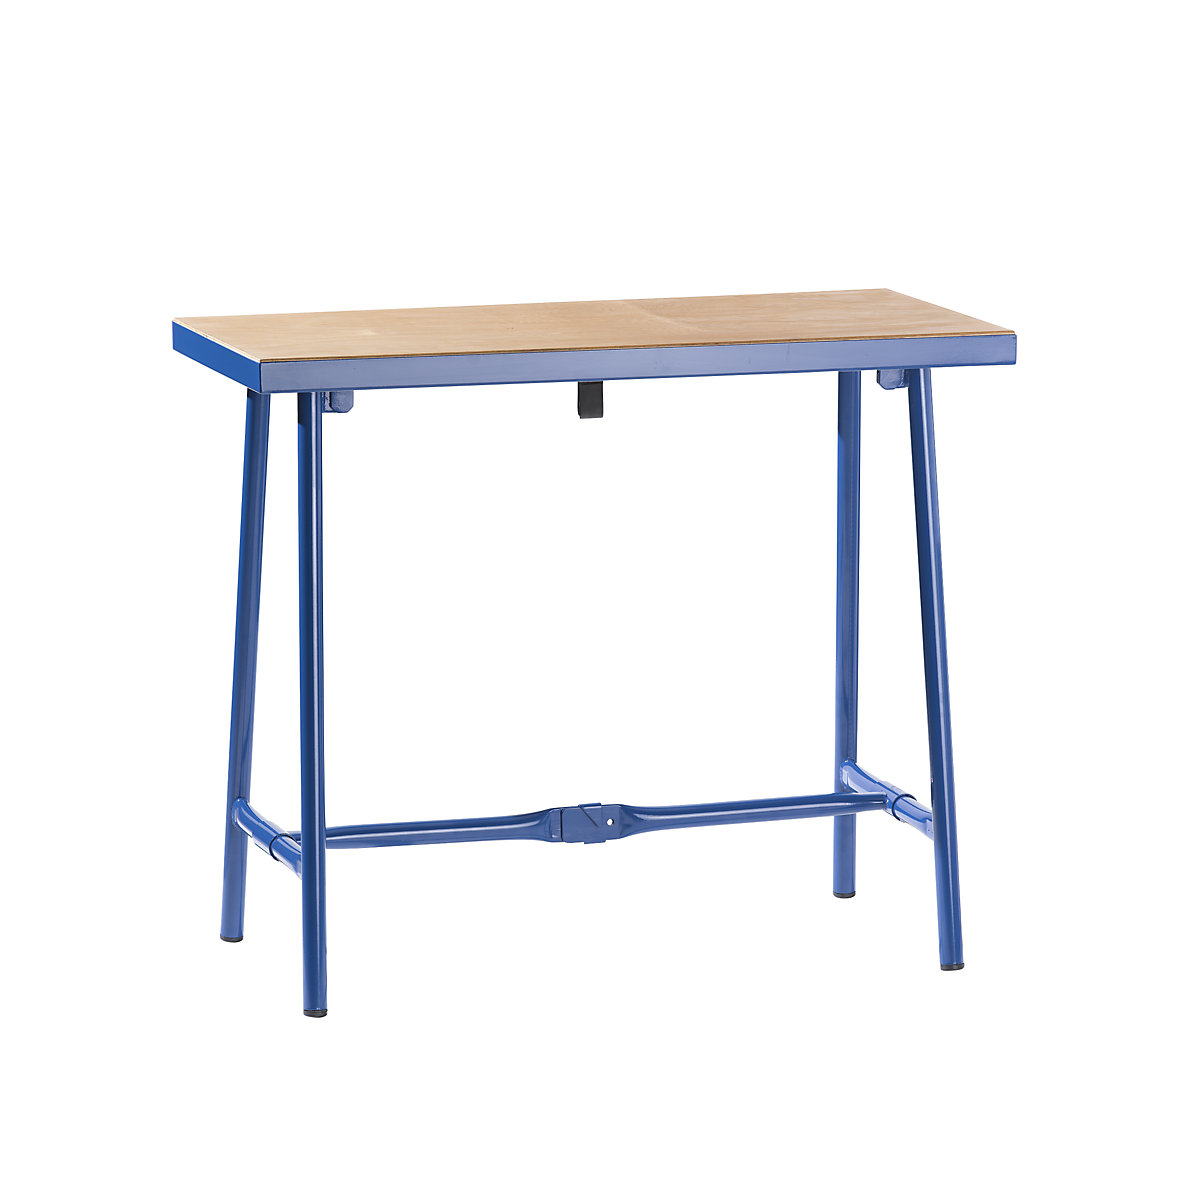 Sklopný dílenský stůl, š x h 1000 x 500 mm, nosnost 120 kg